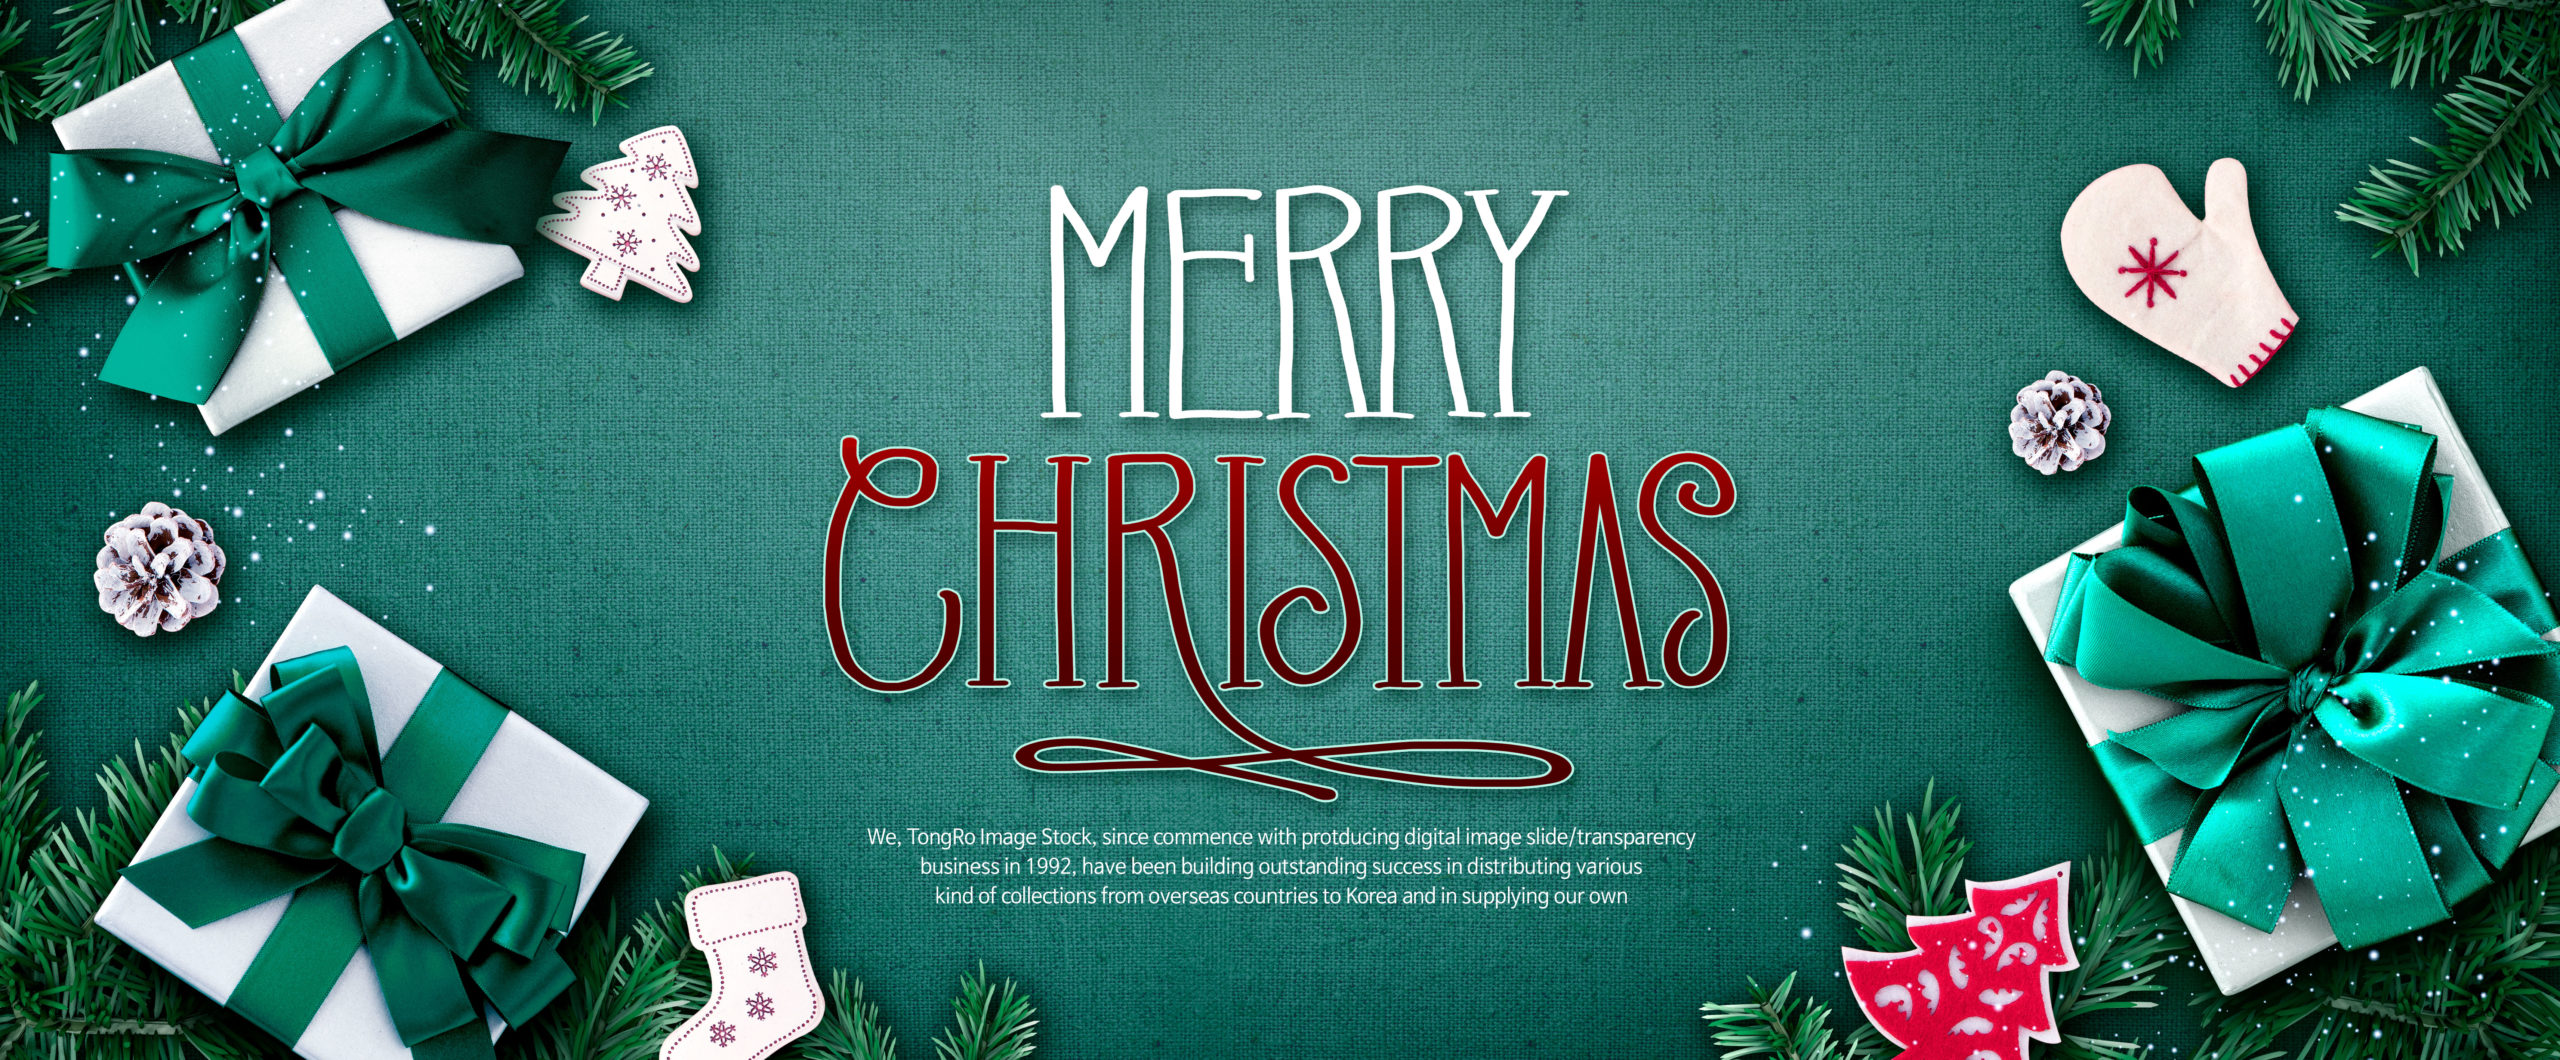 青绿色圣诞节日问候/购物促销活动电商广告Banner设计模板插图